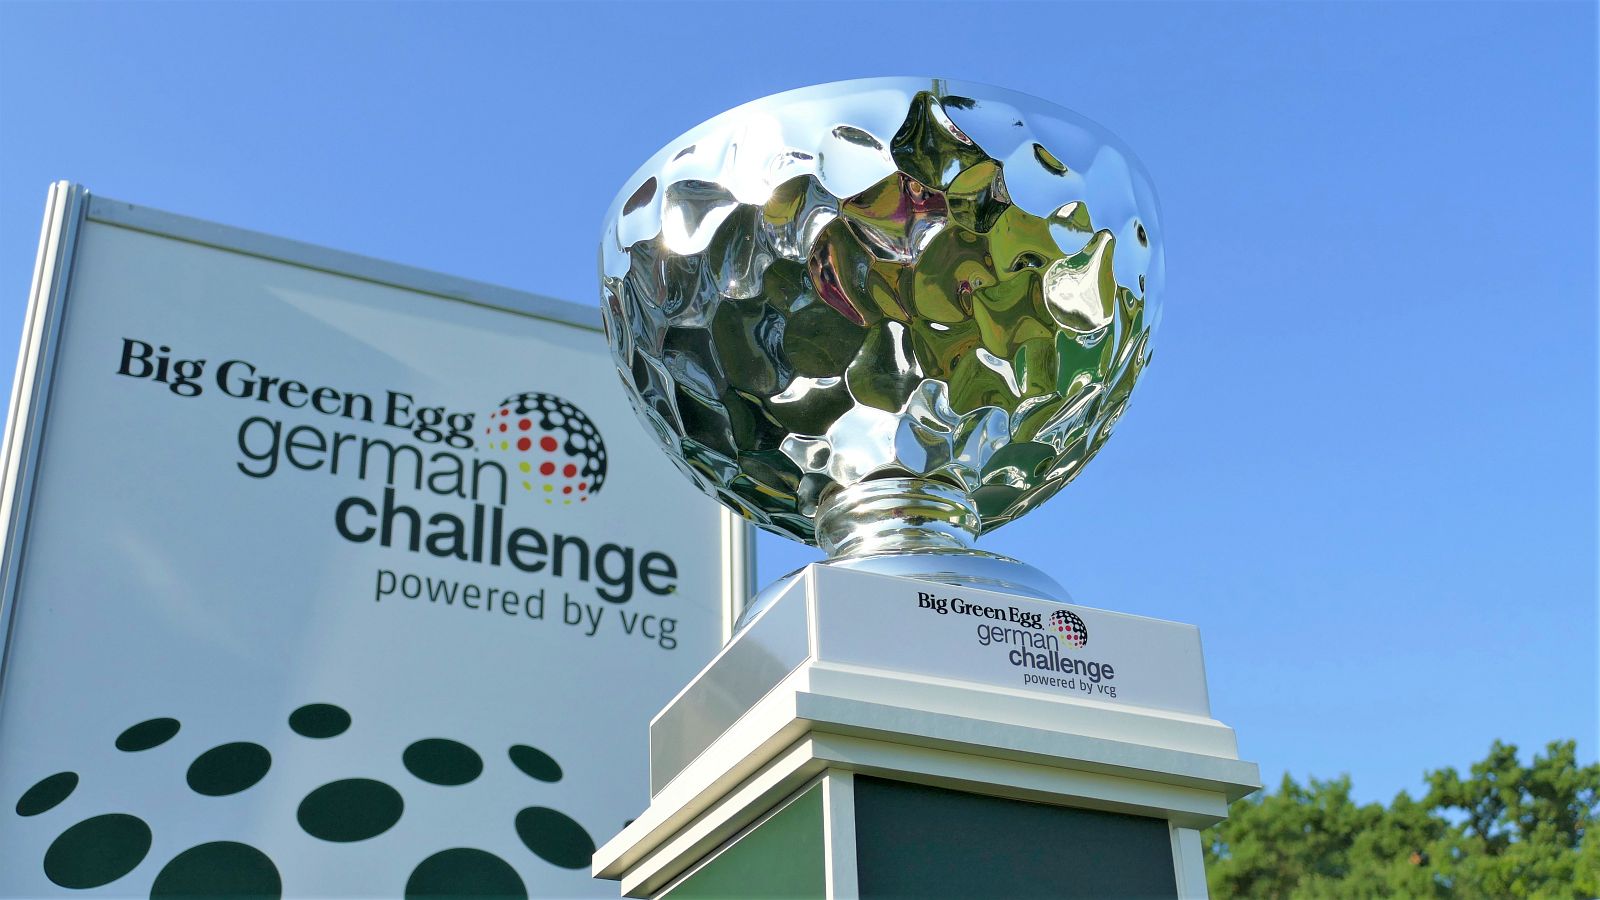 Rein ins Finale: Wer holt sich den Pokal bei der Big Green Egg German Challenge im Wittelsbacher GC? Die letzte Runde läuft.